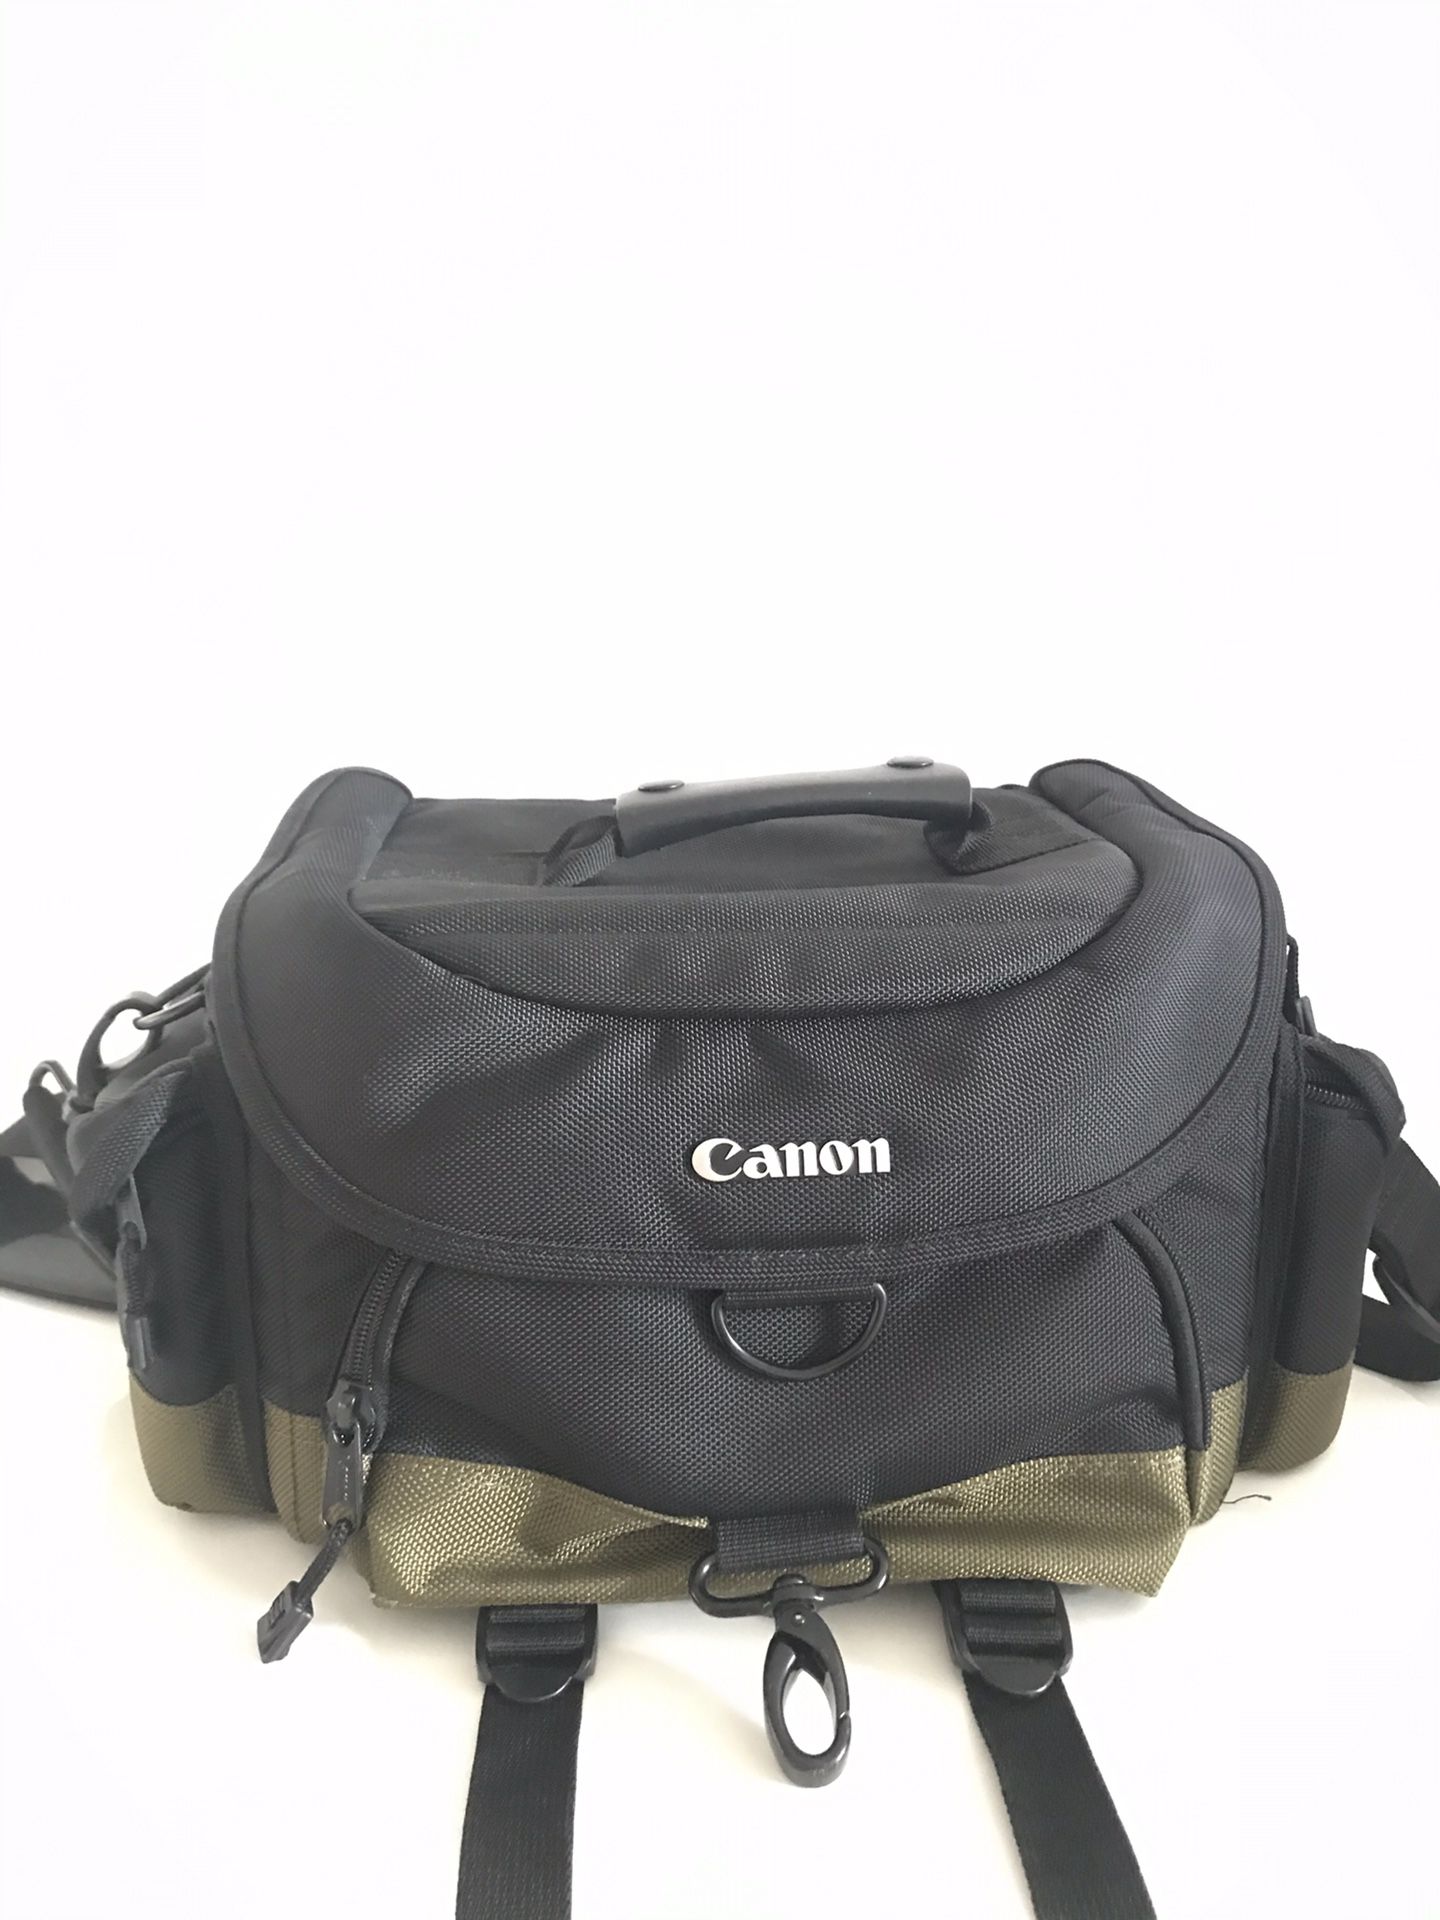 Canon Photography Camera Bag